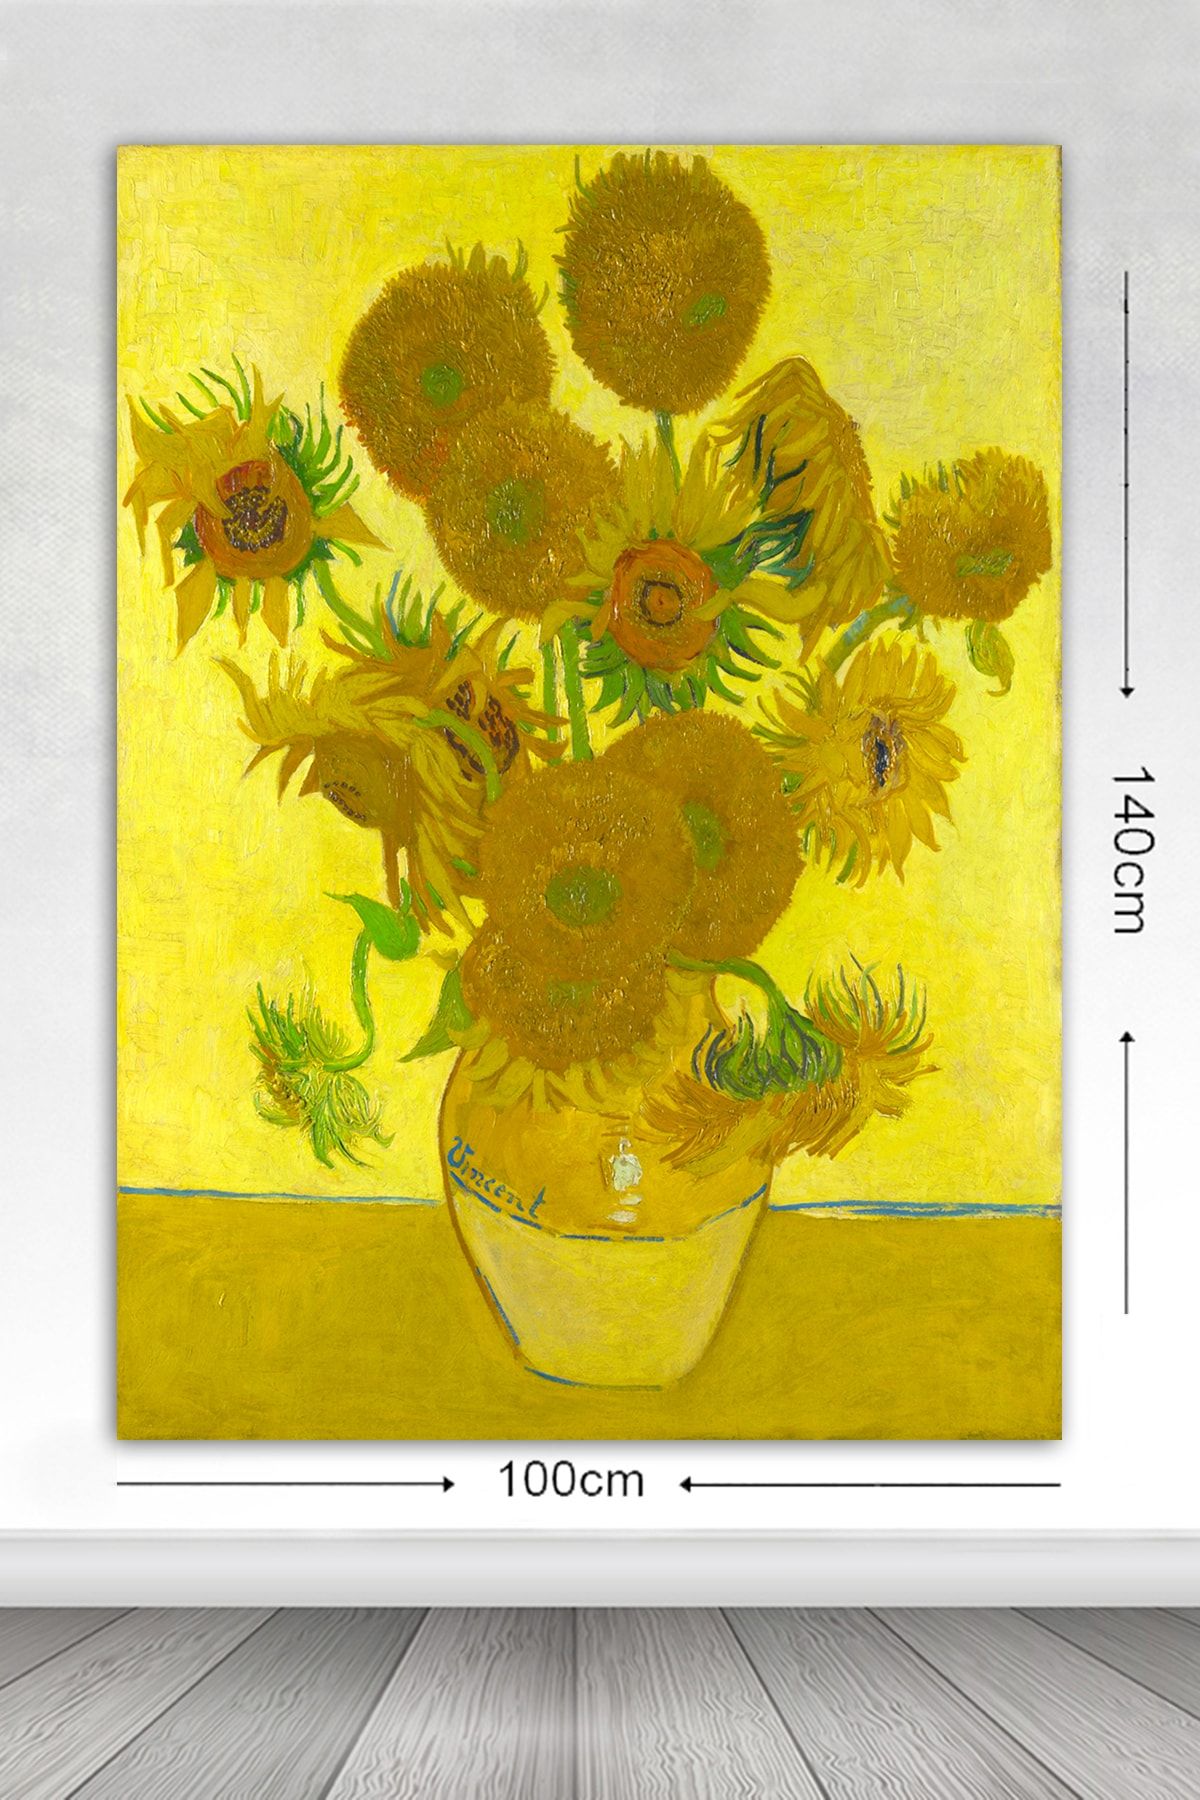 Tablo Center Kanvas Tablo Van Gogh